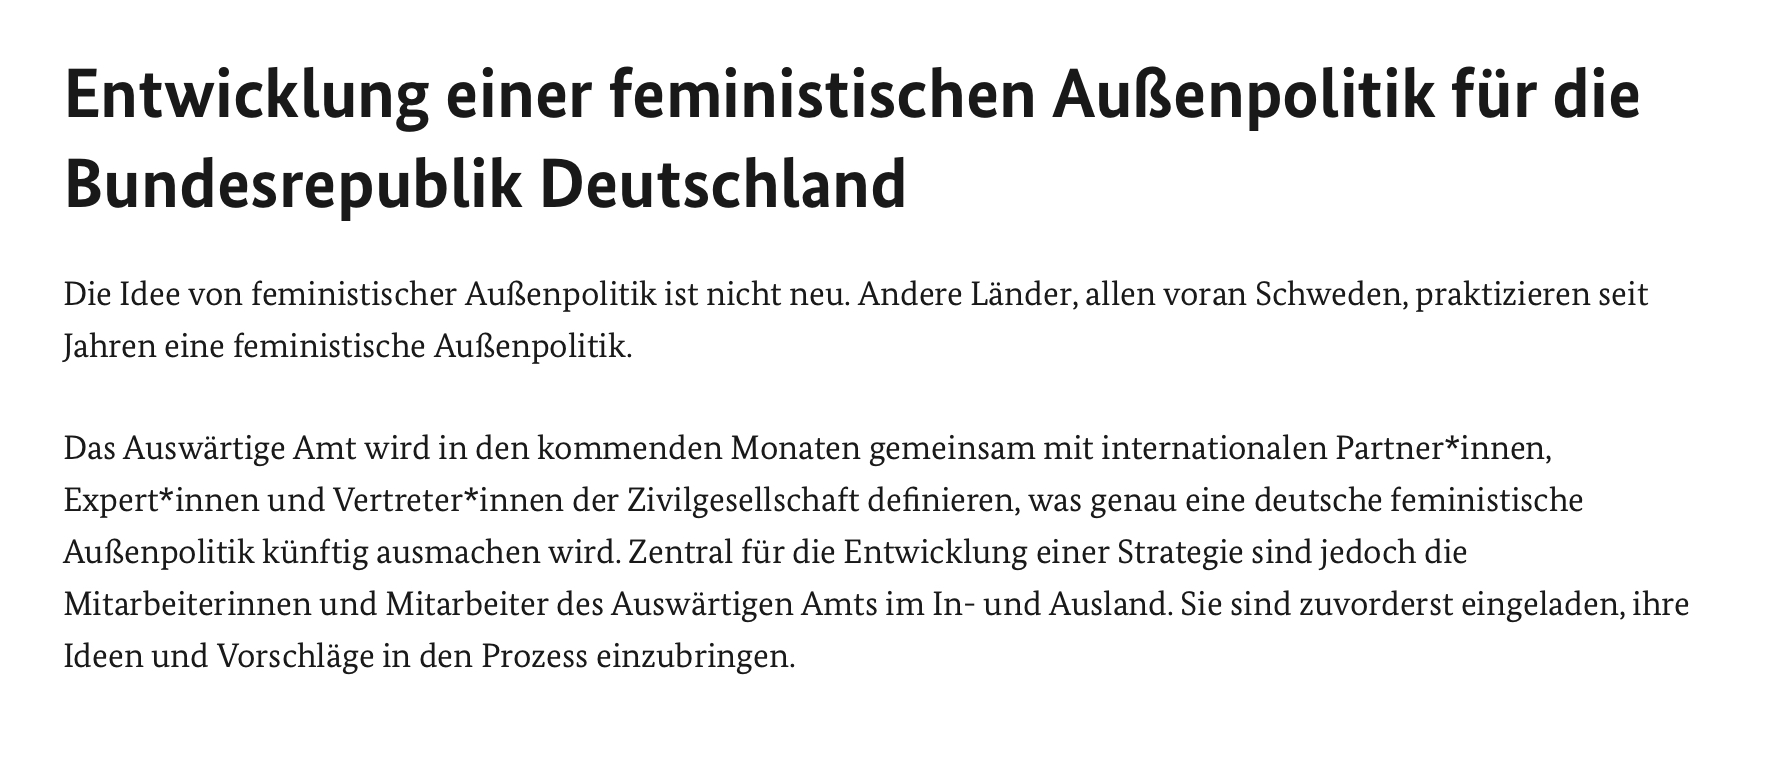 Quelle: Auswärtiges Amt https://www.auswaertiges-amt.de/de/aussenpolitik/themen/feministische-aussenpolitik